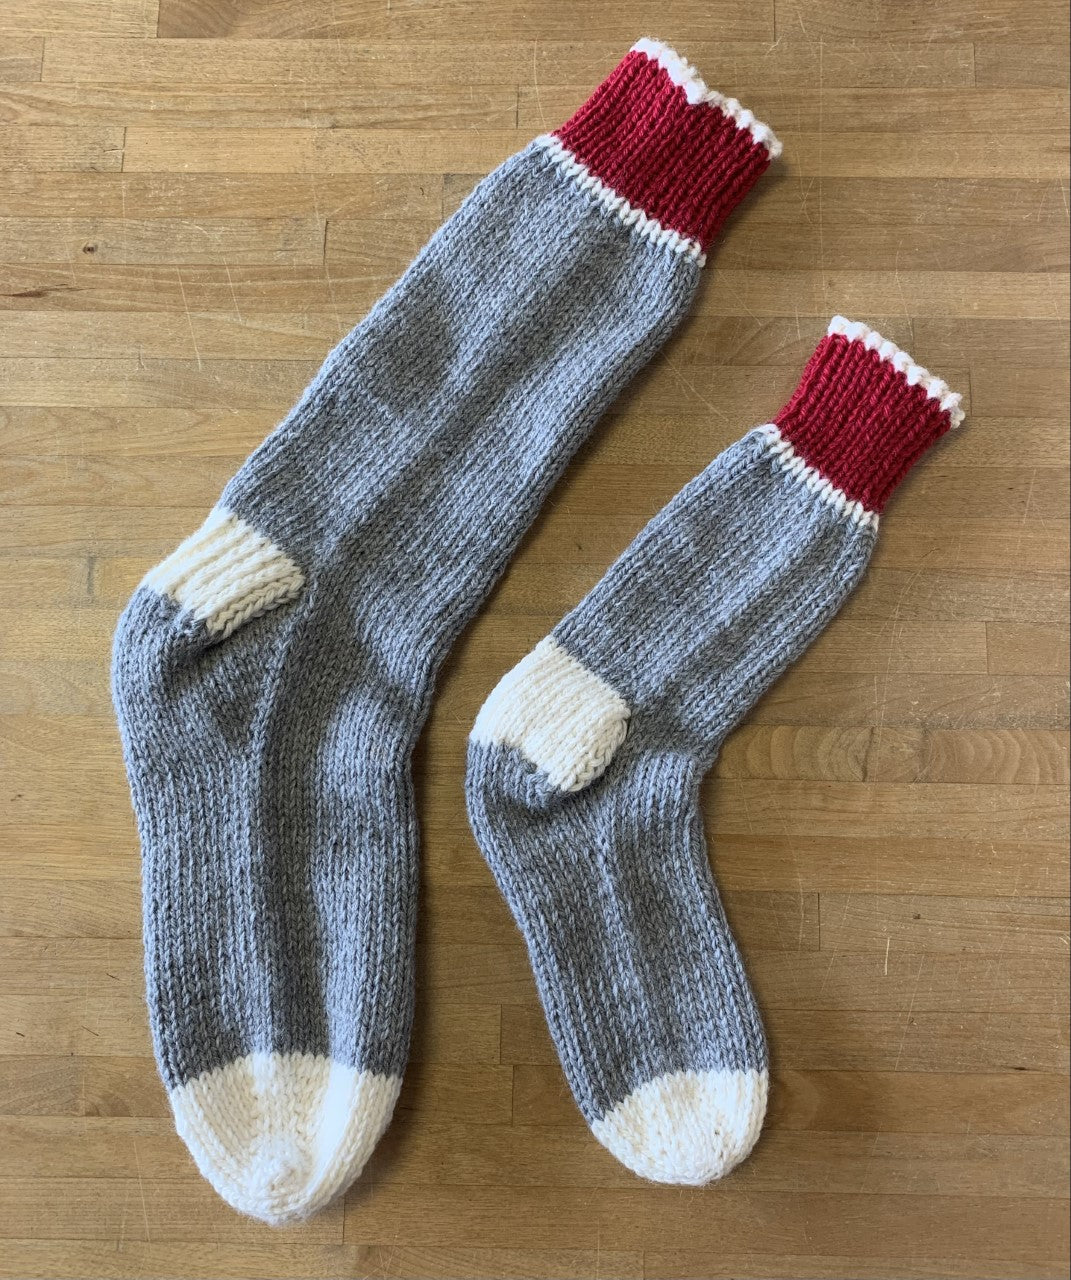 Bush Socks Kits